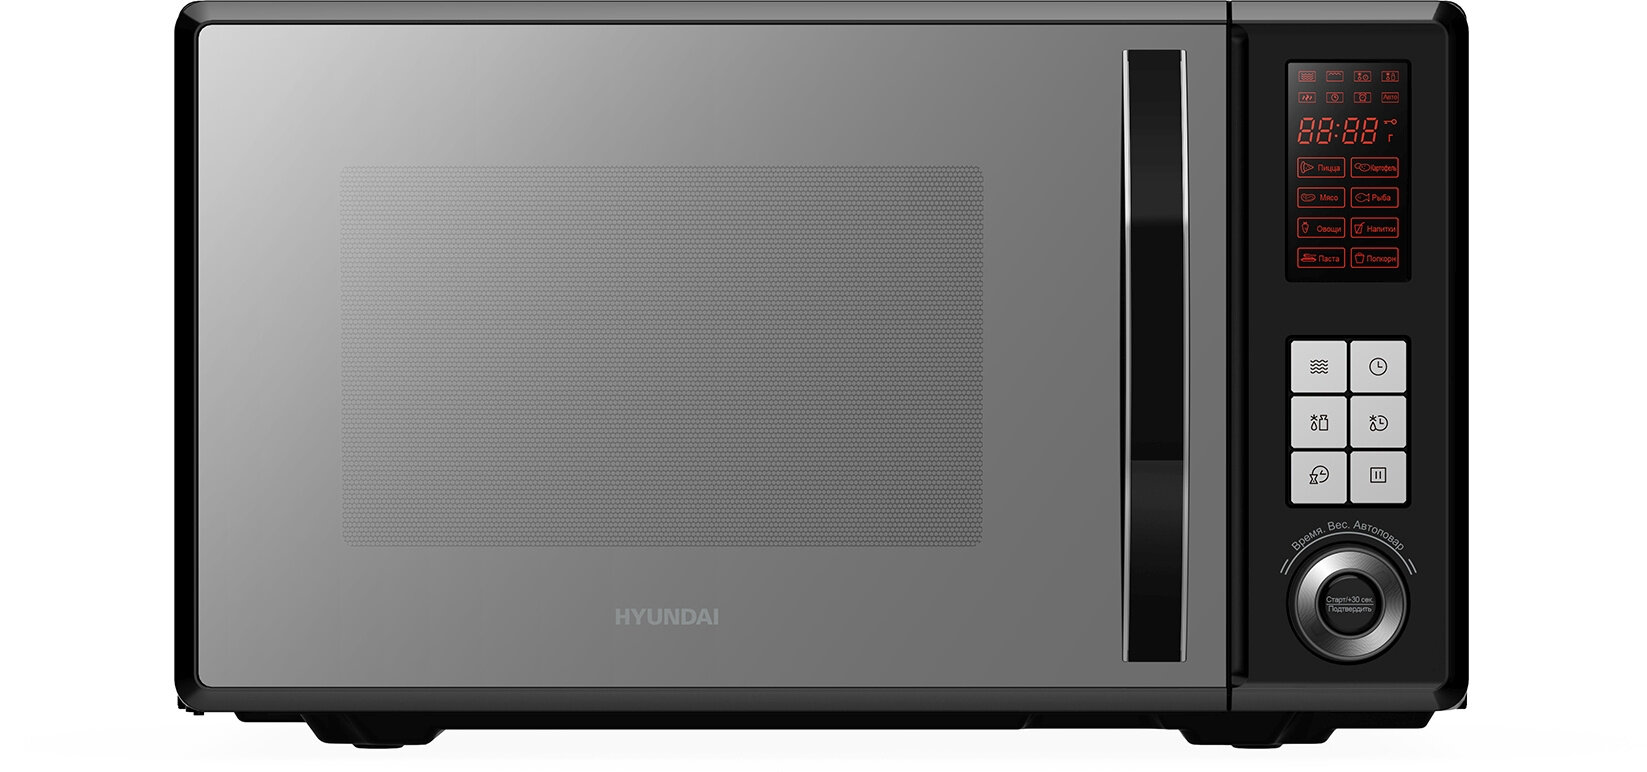 Микроволновая печь Hyundai HYM-D3009 нержавеющая сталь